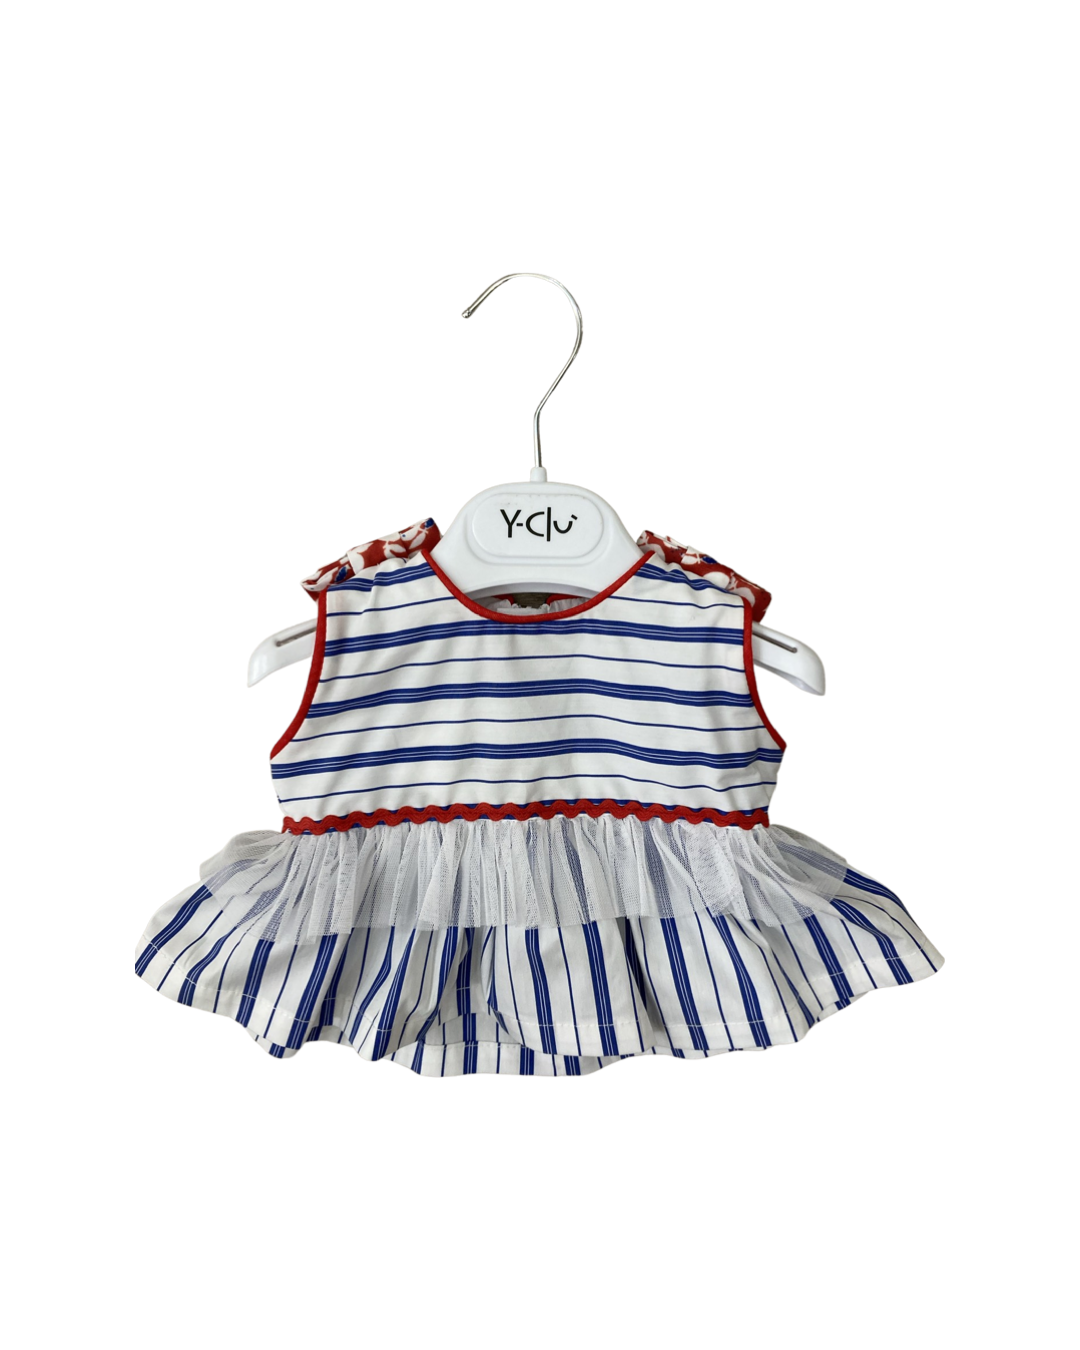 camicia , Camicia per neonata  Y-Clu YN9761 - BabyBimbo 0-16, abbigliamento bambini